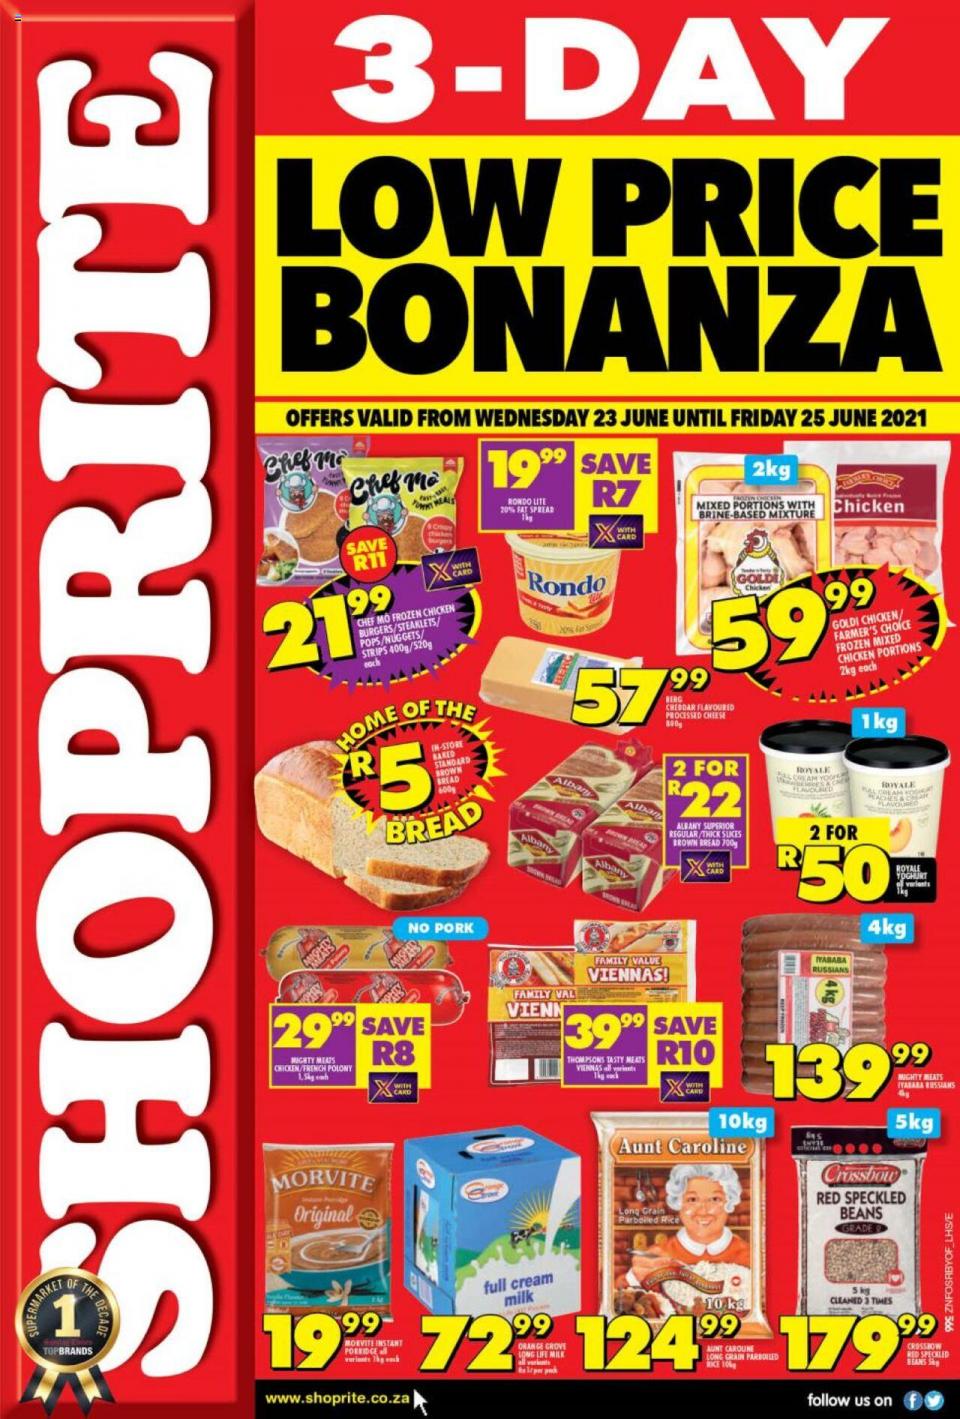 Shoprite Specials 3-Day Low Price Bonanza 23 – 25 June 2021